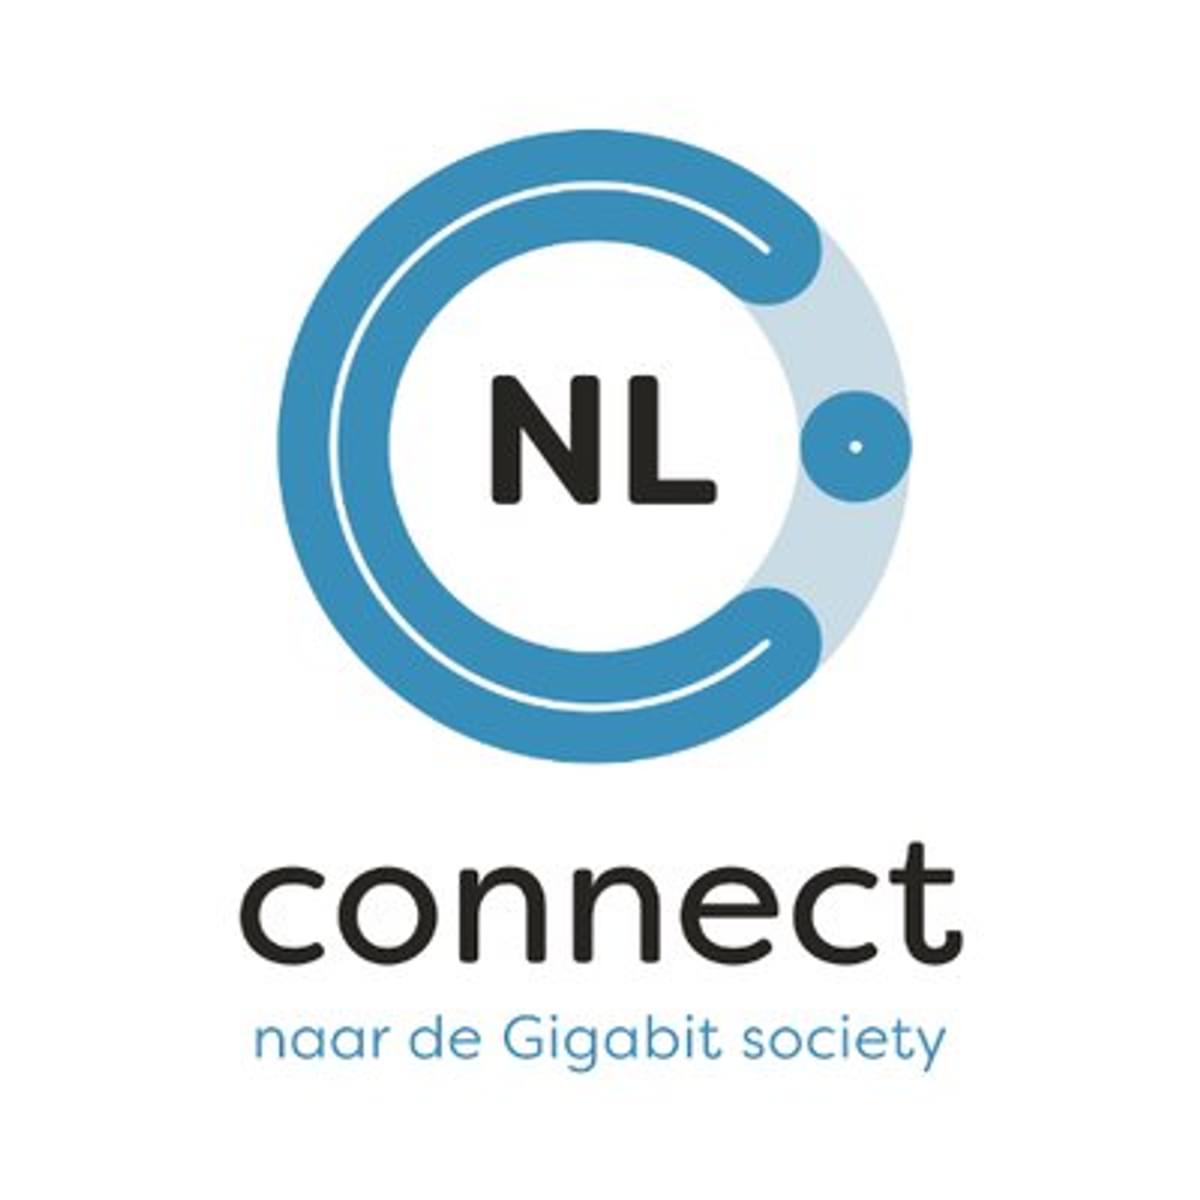 Vereniging NLconnect groeit naar tachtig leden image